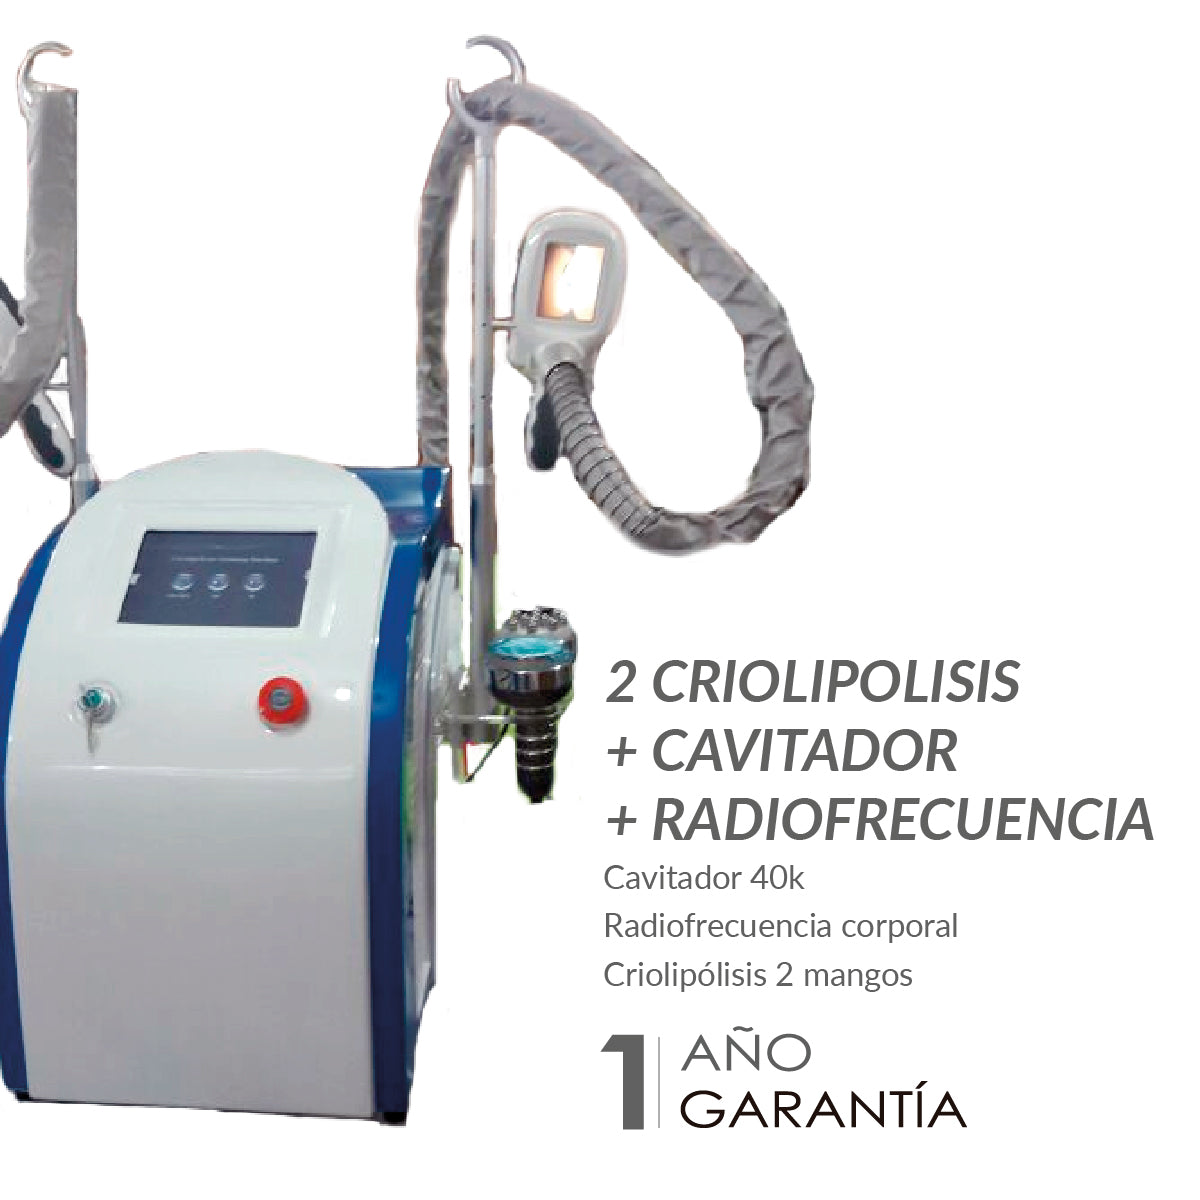 2 Criolipolisis + Cavitador + Radiofrecuencia